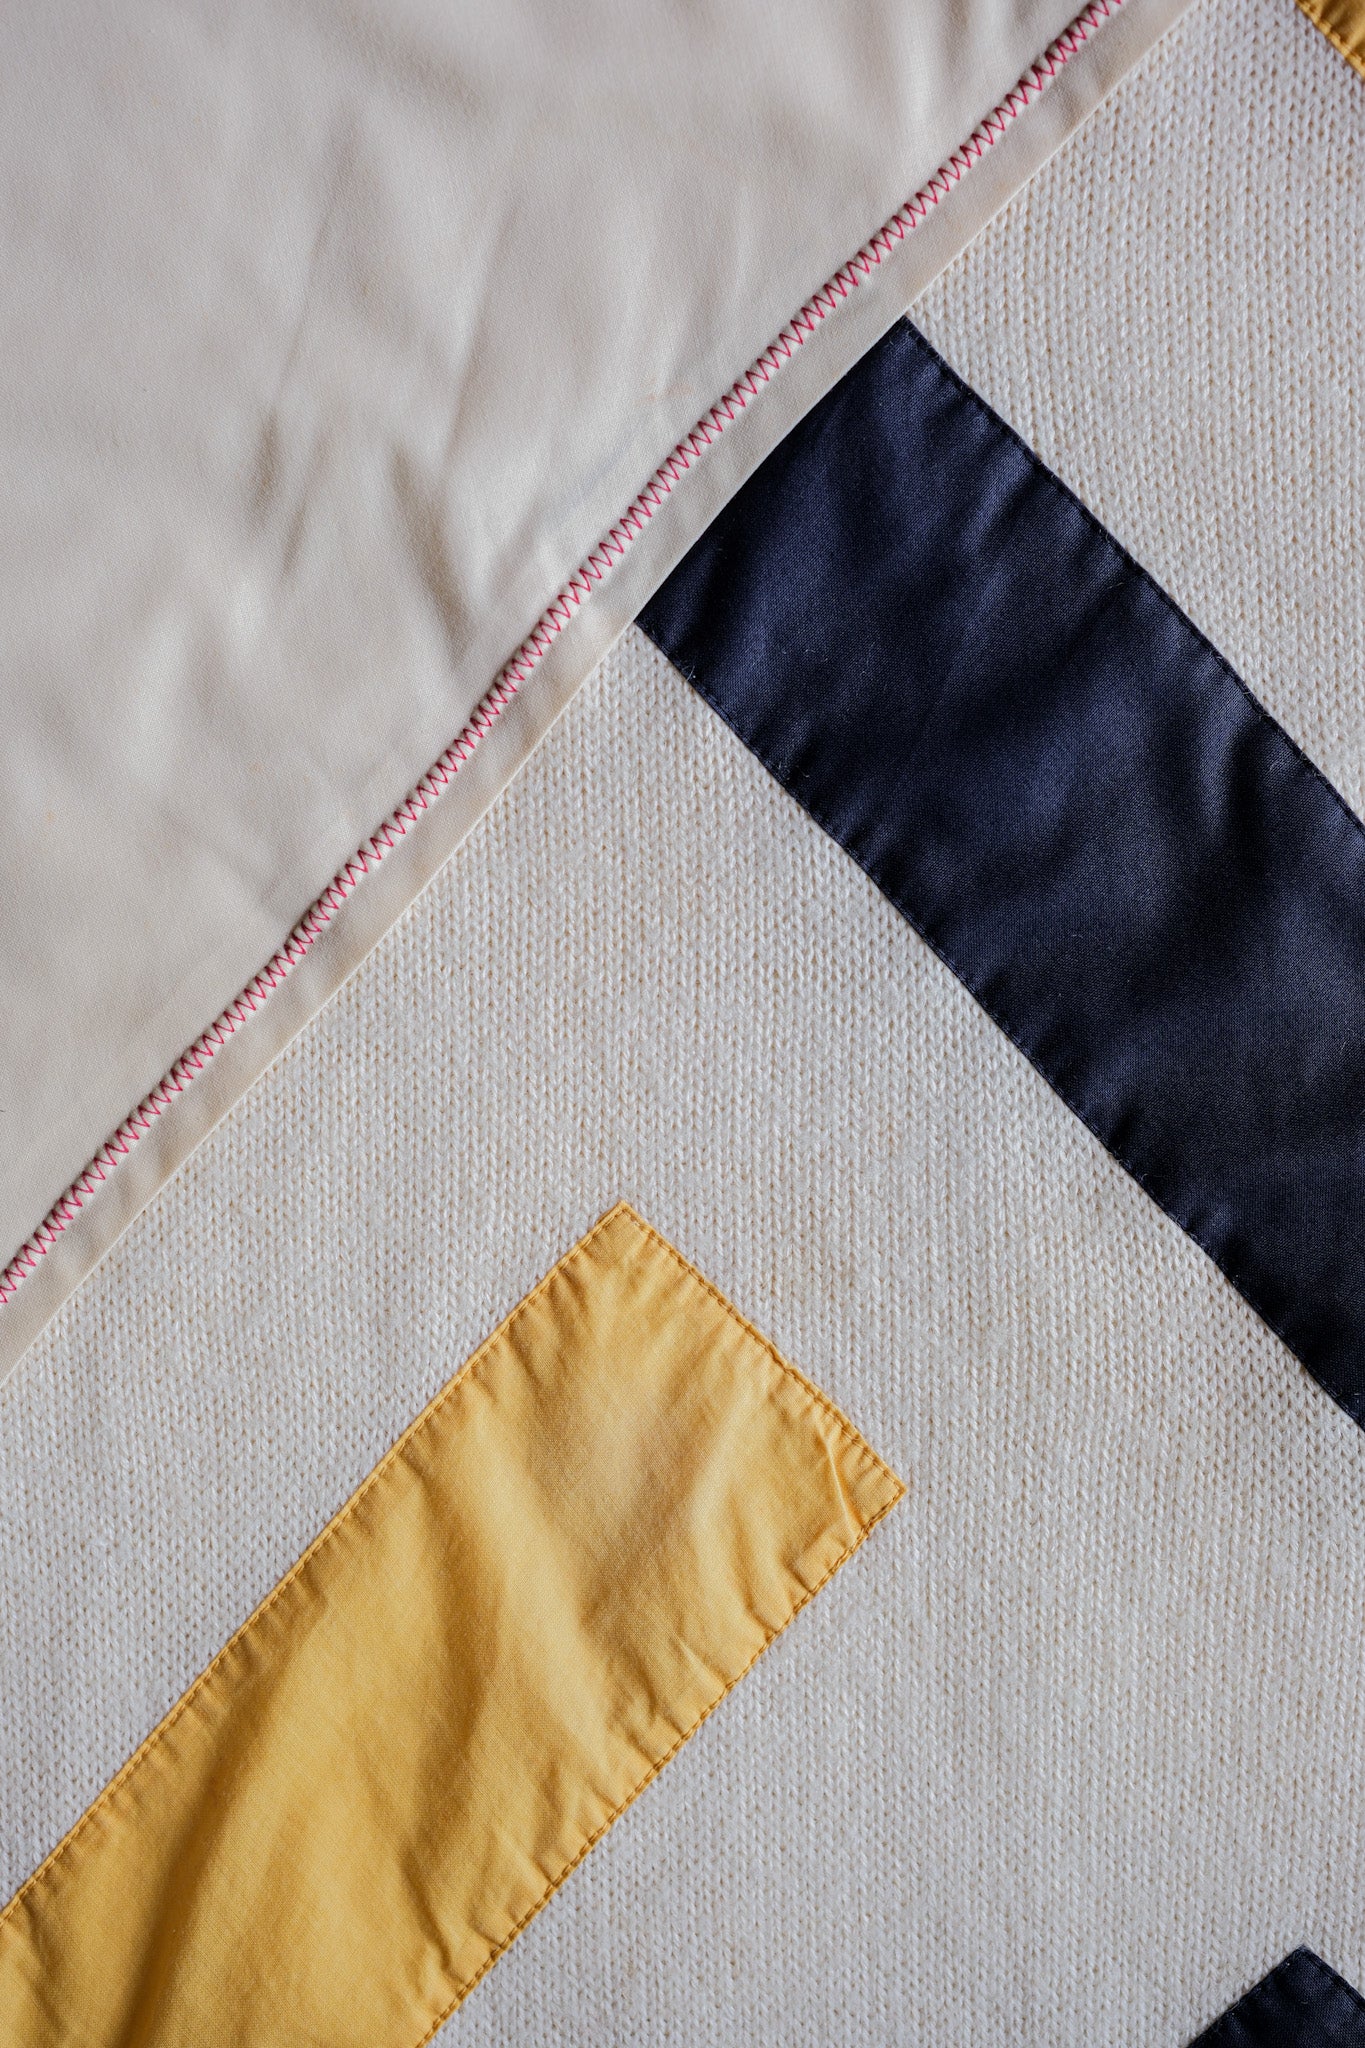 [~ 80's] Bloc de couleur vintage italien Taille du pull acrylique.